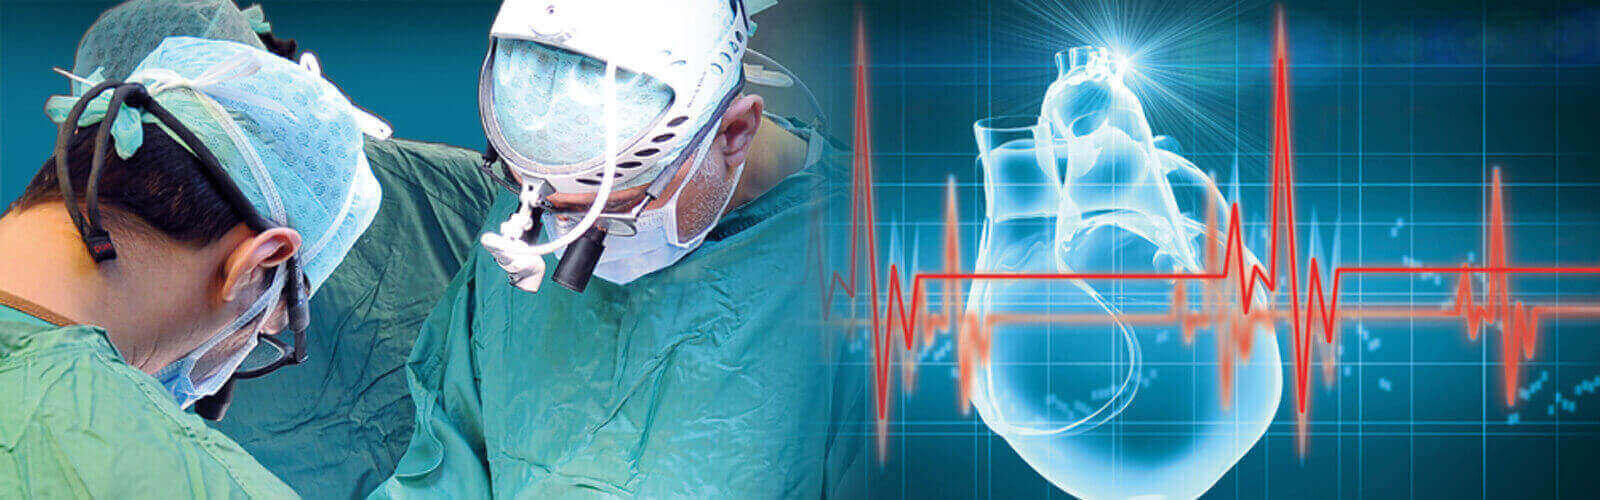 Coronary Angioplasty Surgery in India